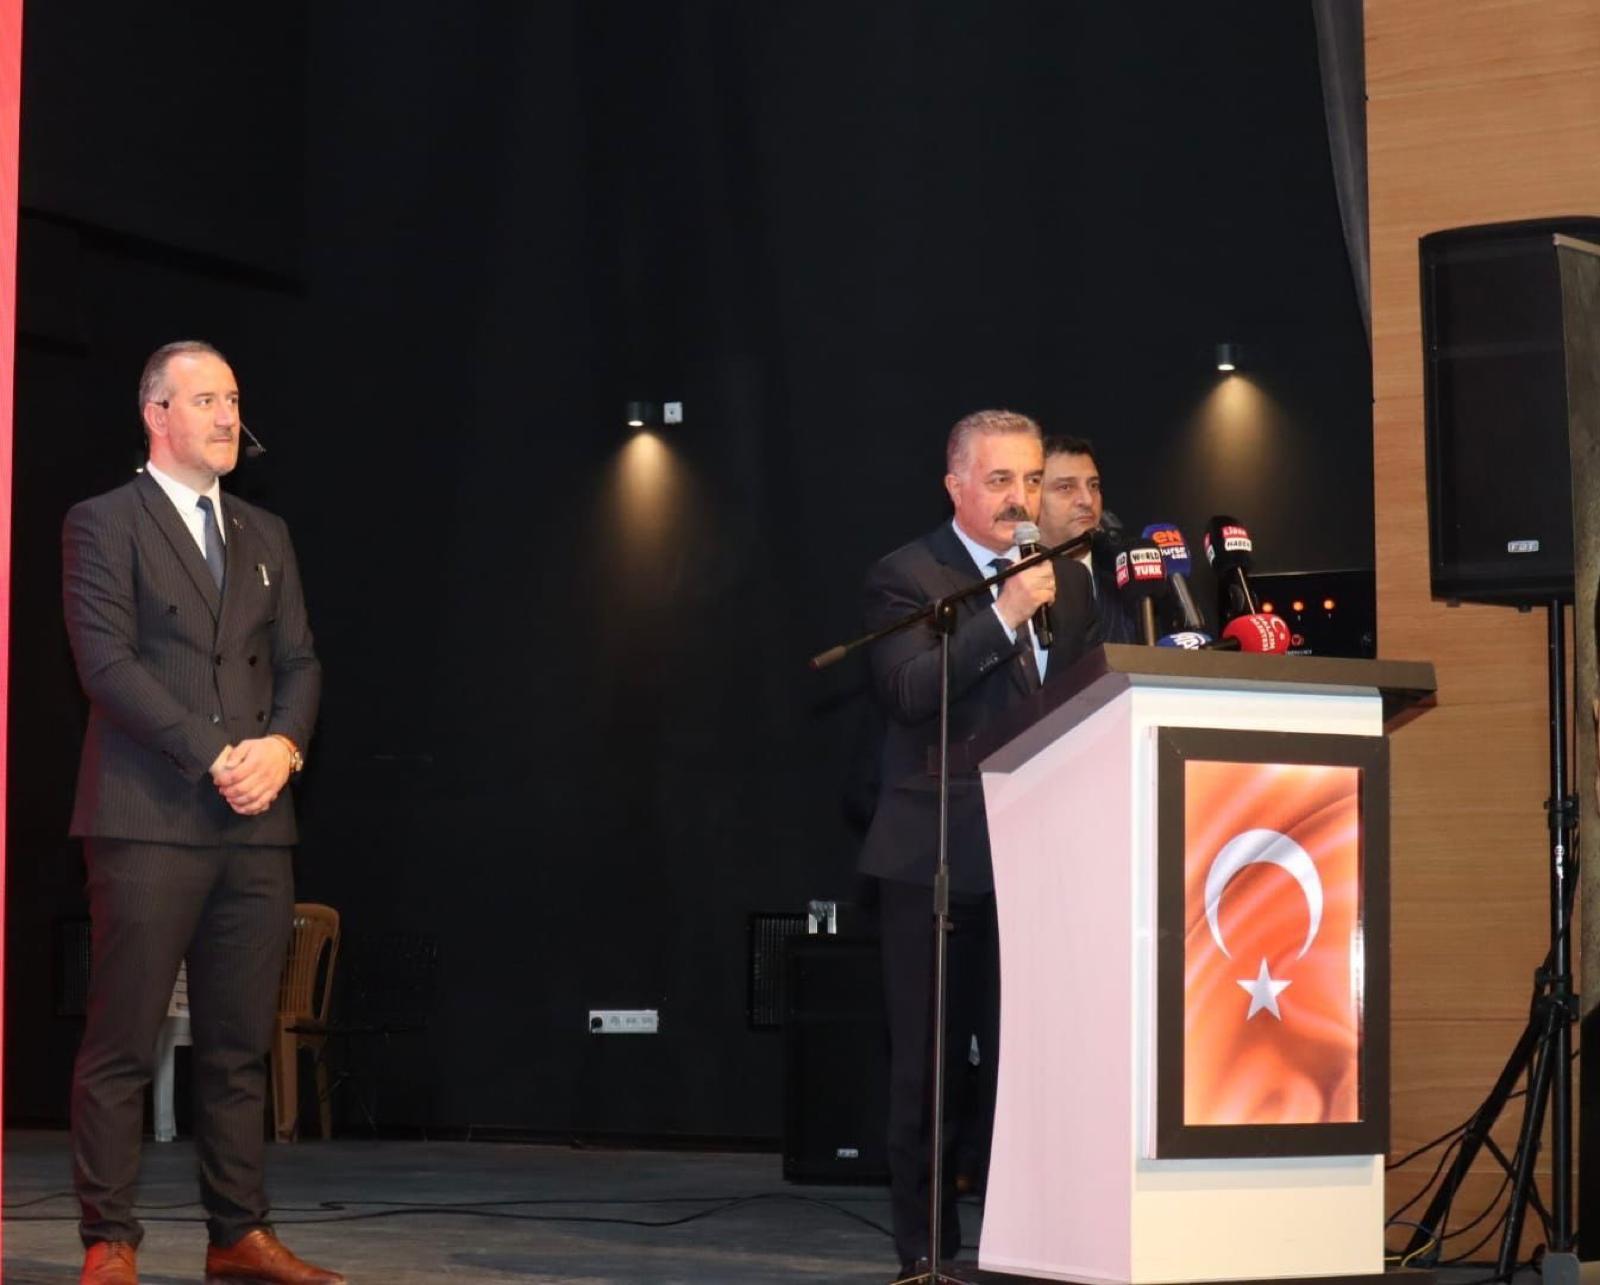 Büyükataman: Mustafa Kemal Paşa'nın emaneti bugün hangi ellerde?